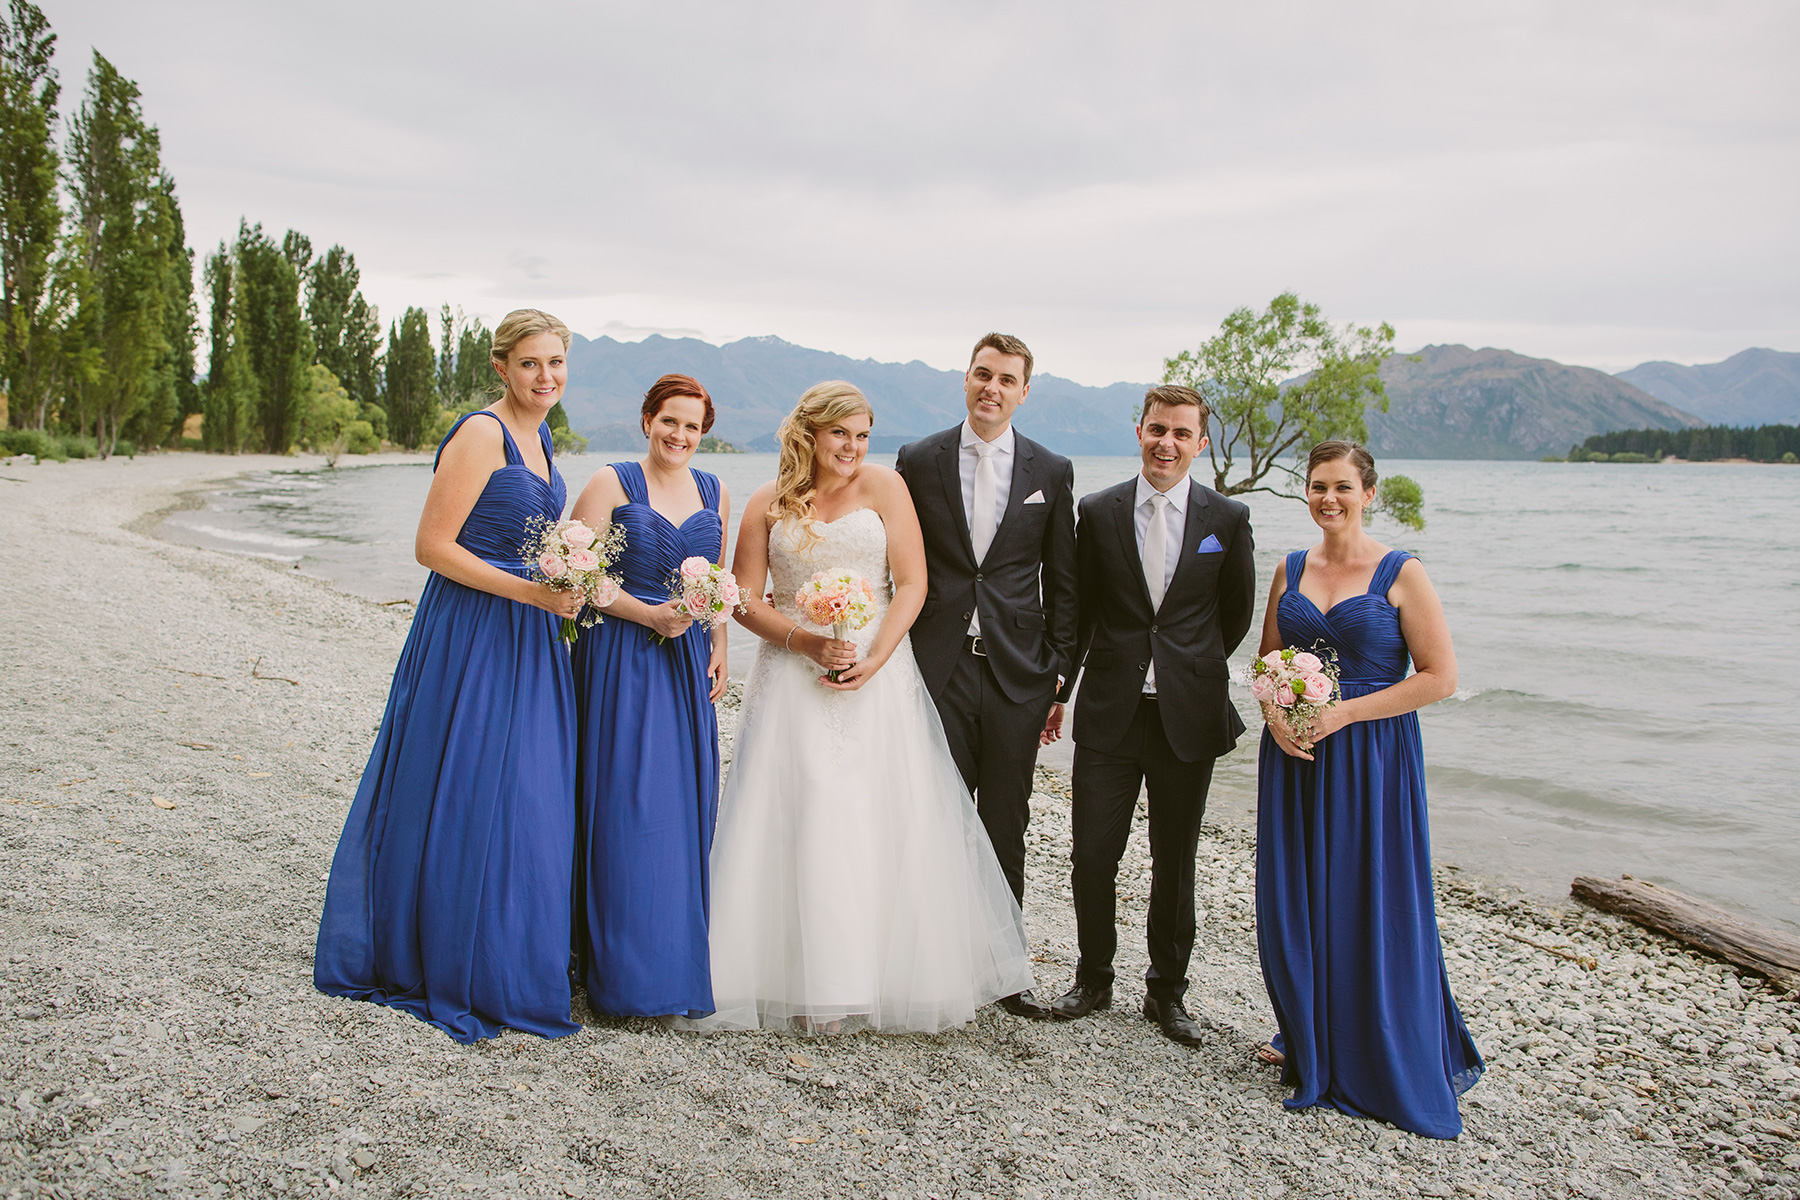 Skye_Steve_New-Zealand-Wedding_032